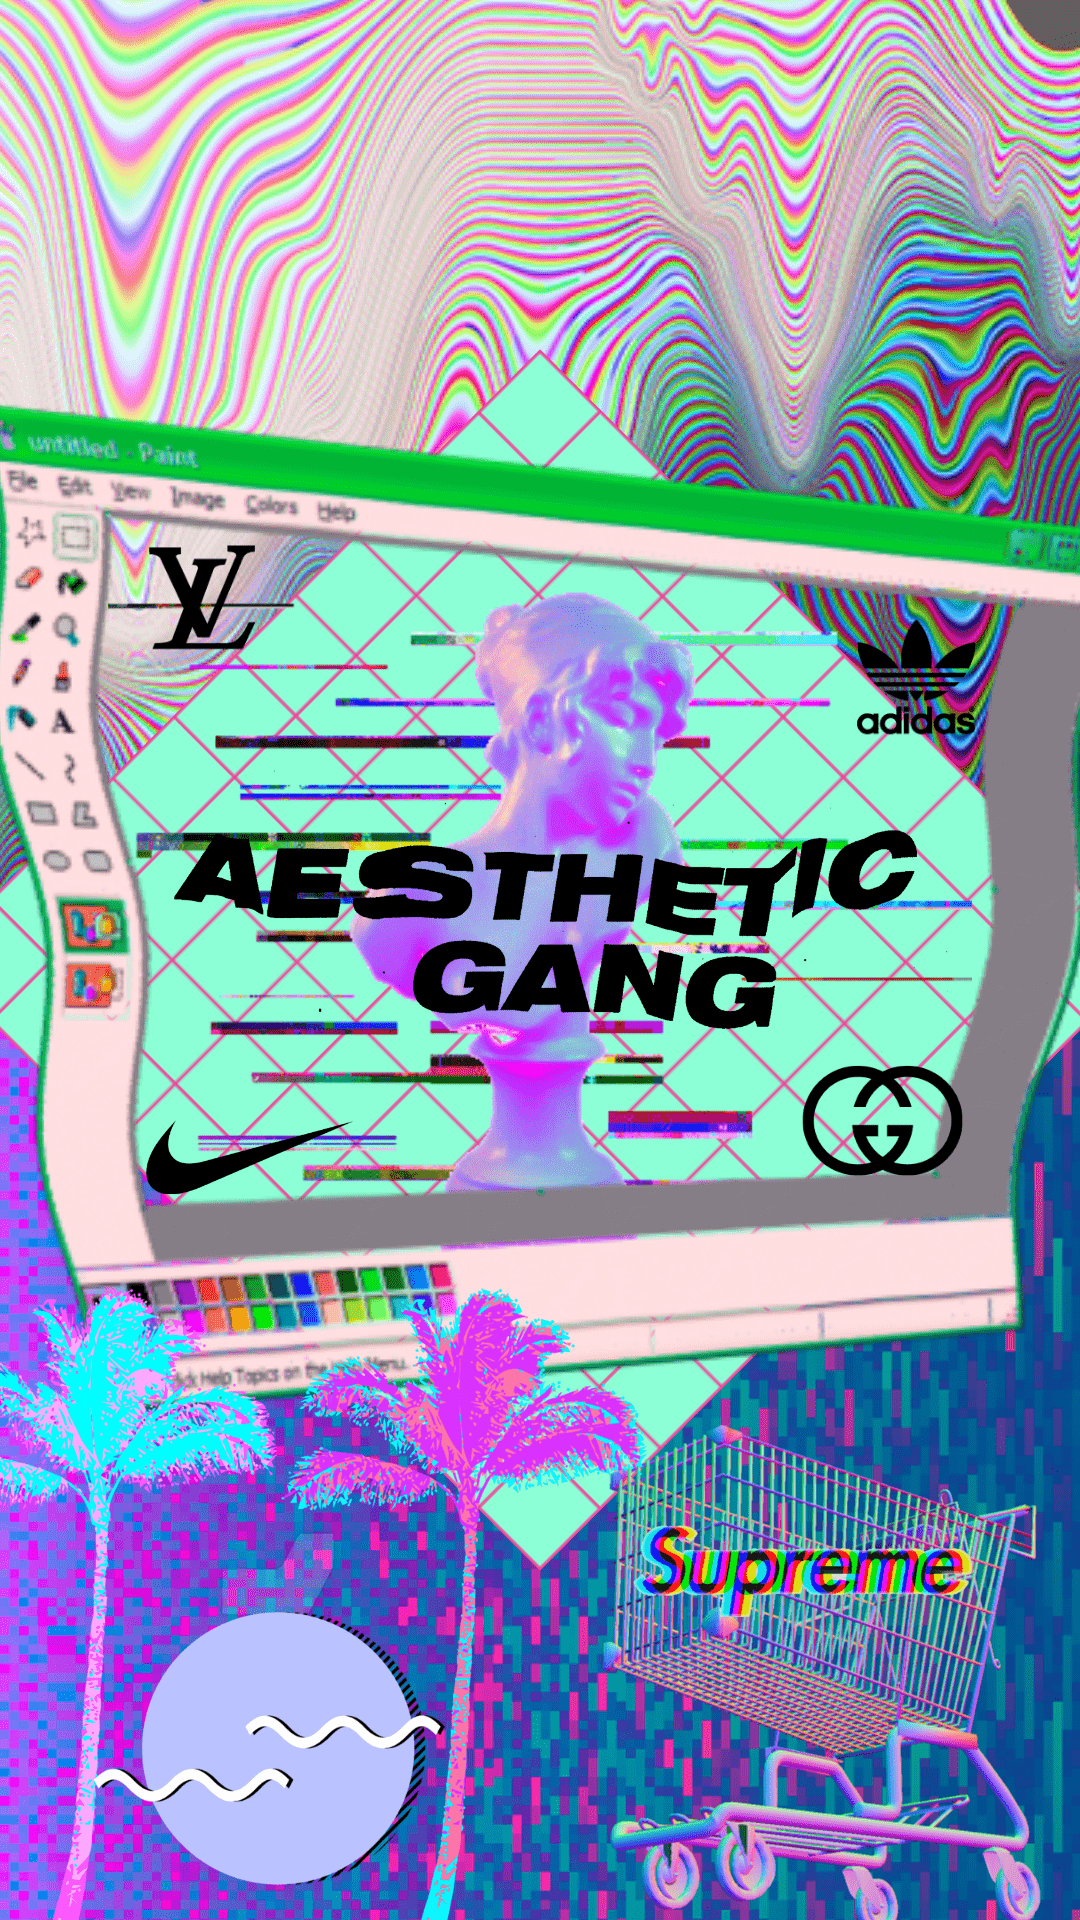 Aesthetic Gang Wallpaper I Made For My Phone - Vaporwave